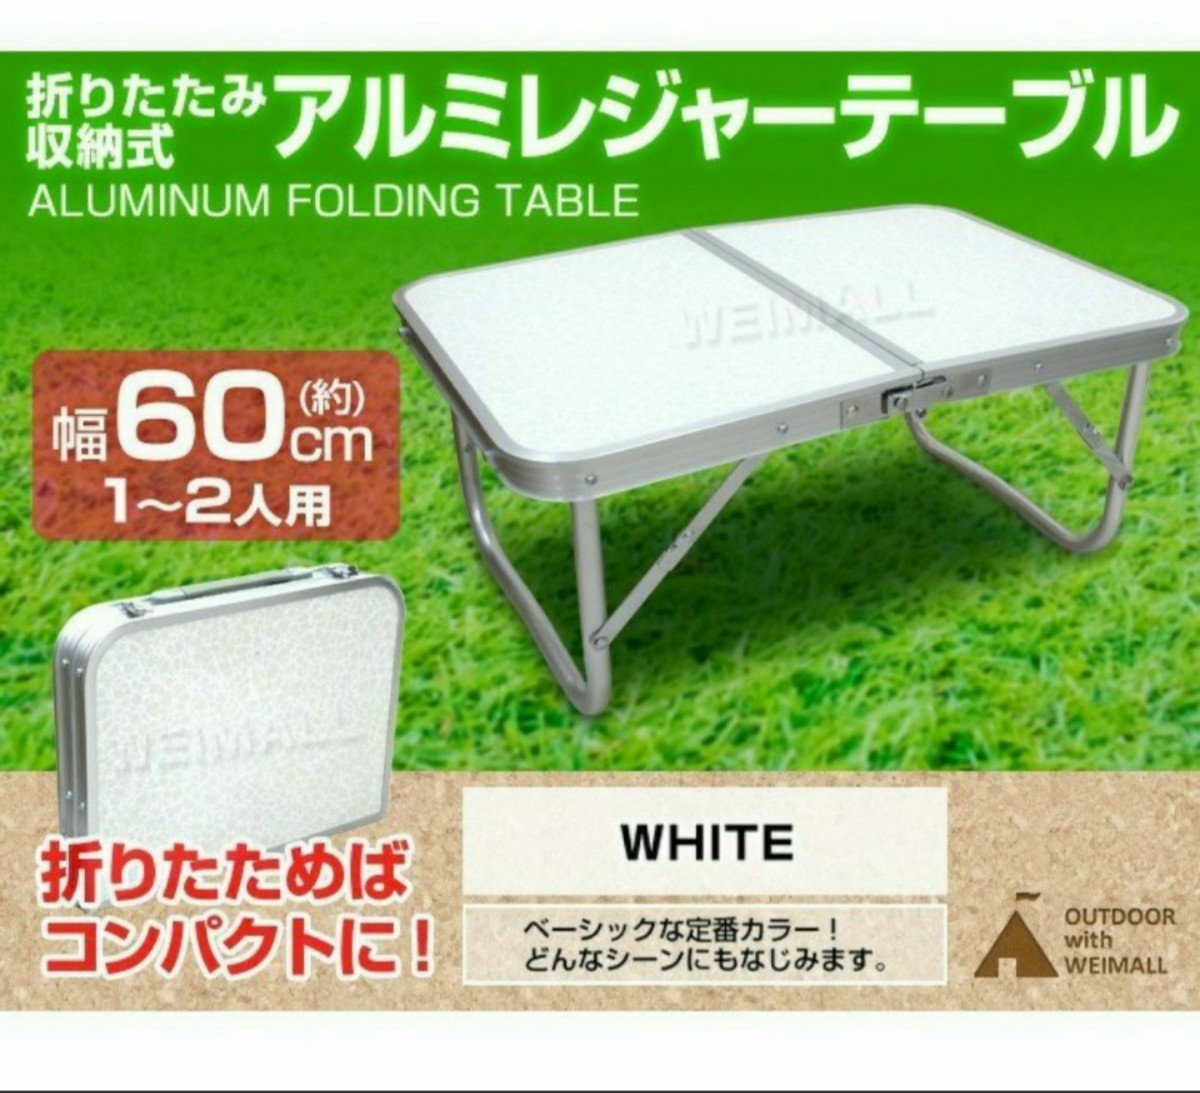 ◆週末限定値引き◆アウトドア メルモント 折り畳み式 アルミ レジャ テーブル 